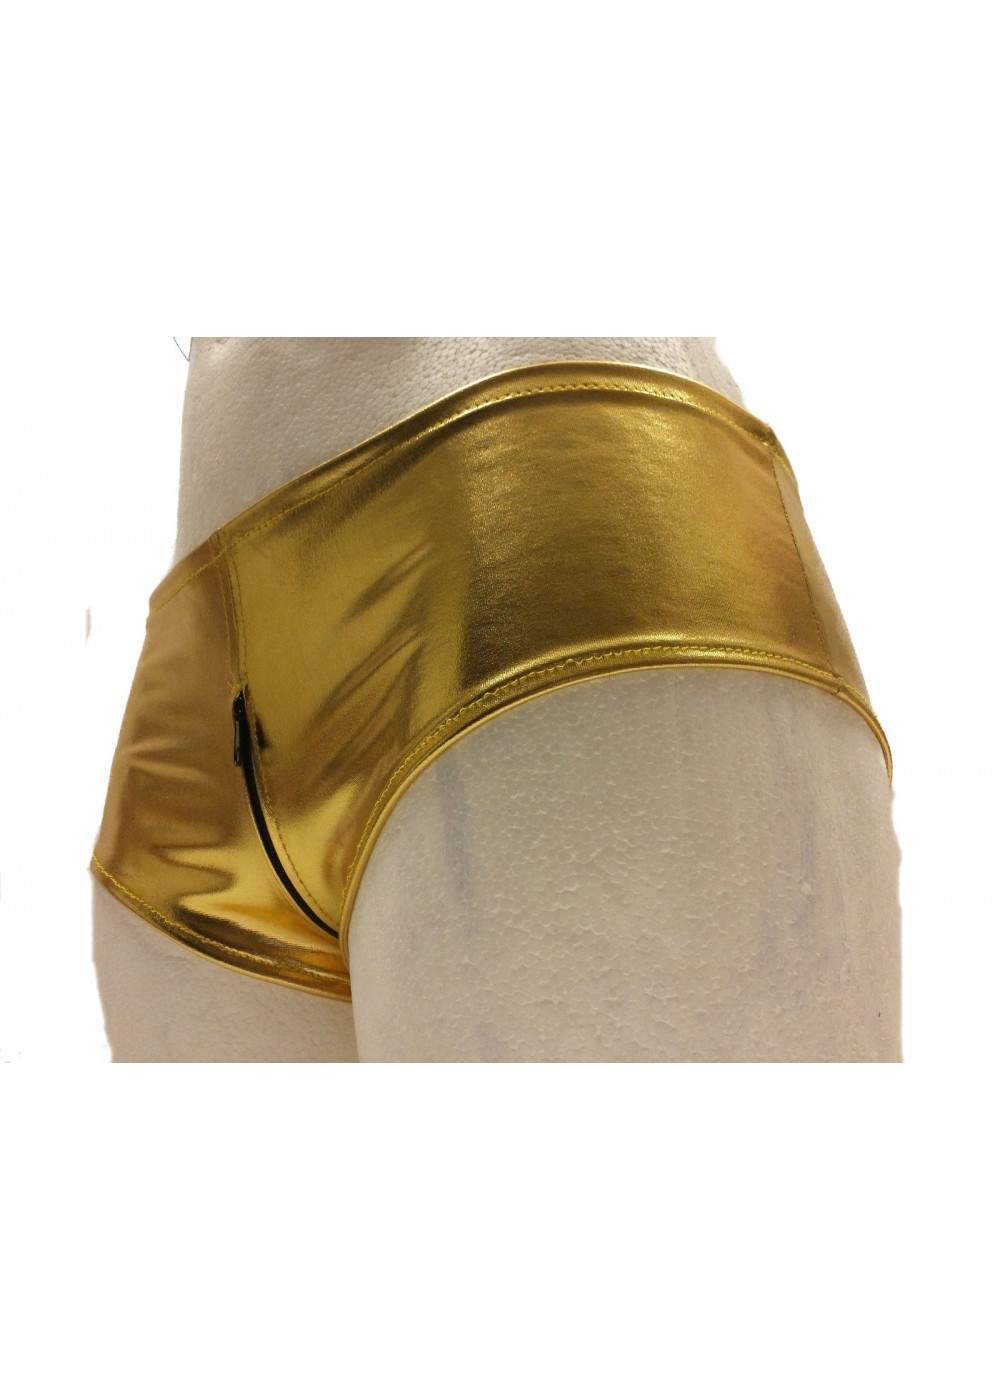 Pantalones calientes Ouvert de cuero dorado con cremallera Tallas 32 - 52 - 